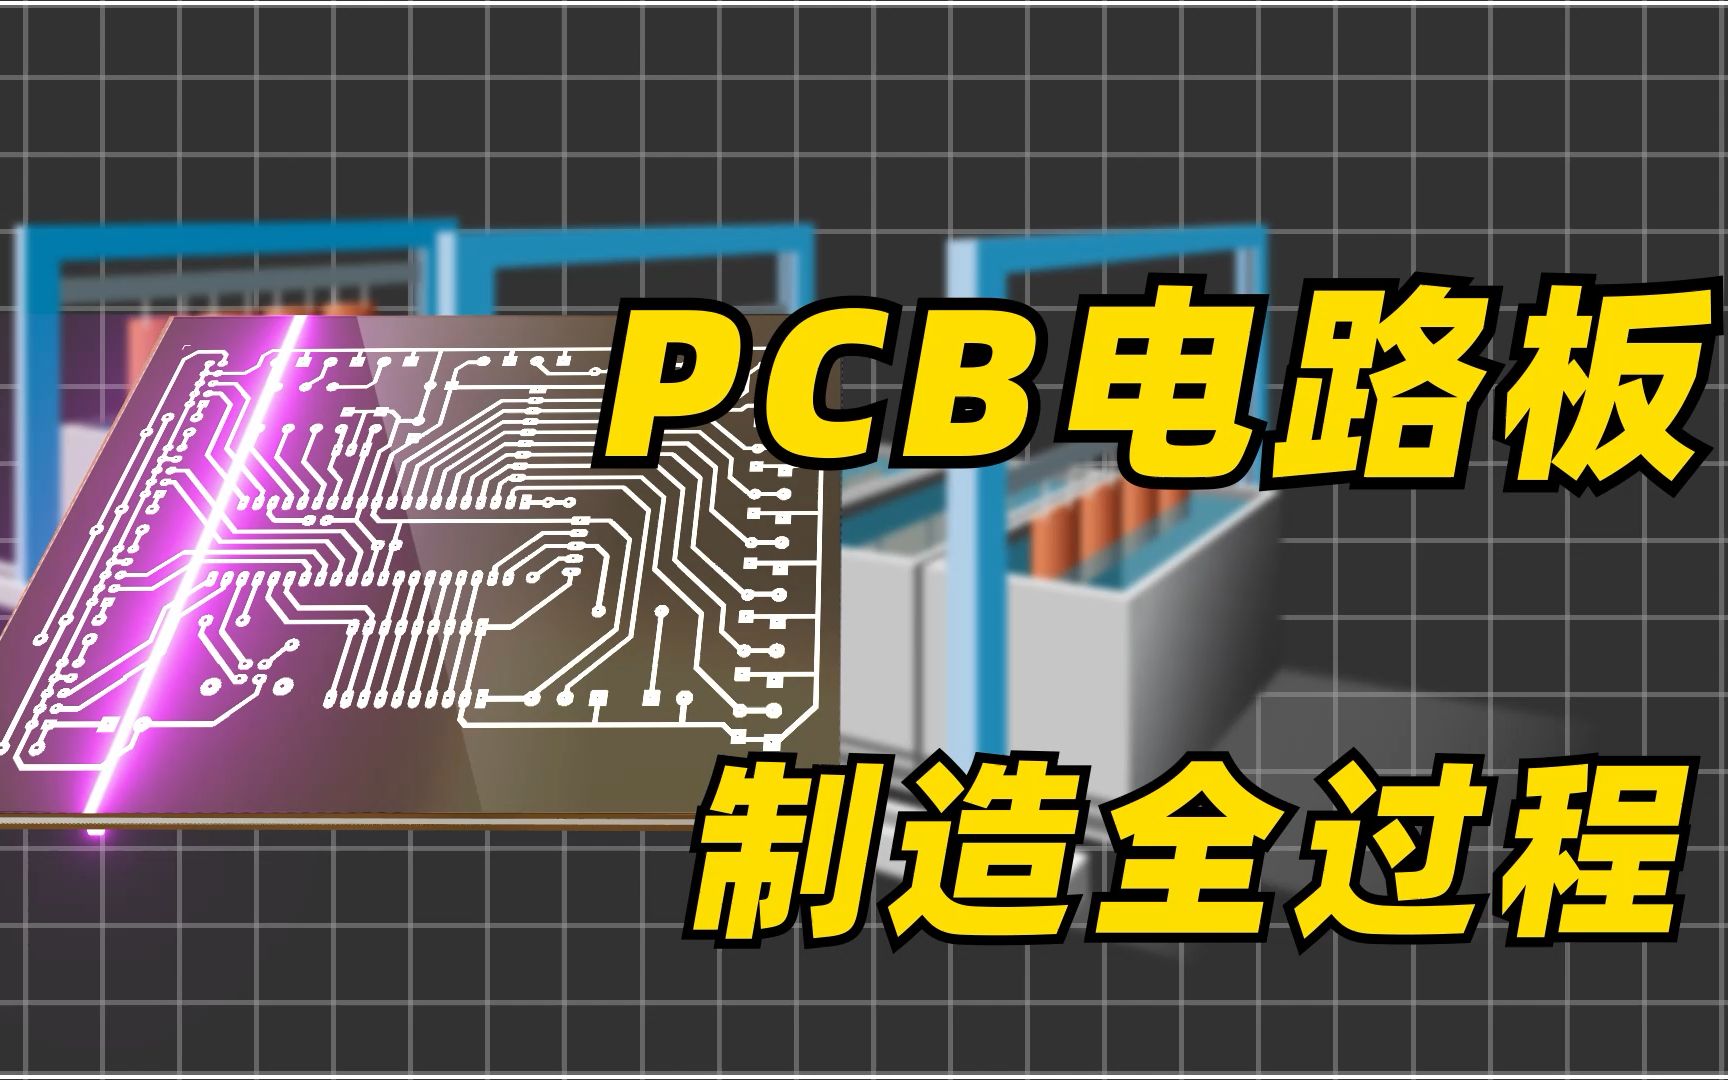 原来电路板都是这样做的,PCB电路板最详细生产解析